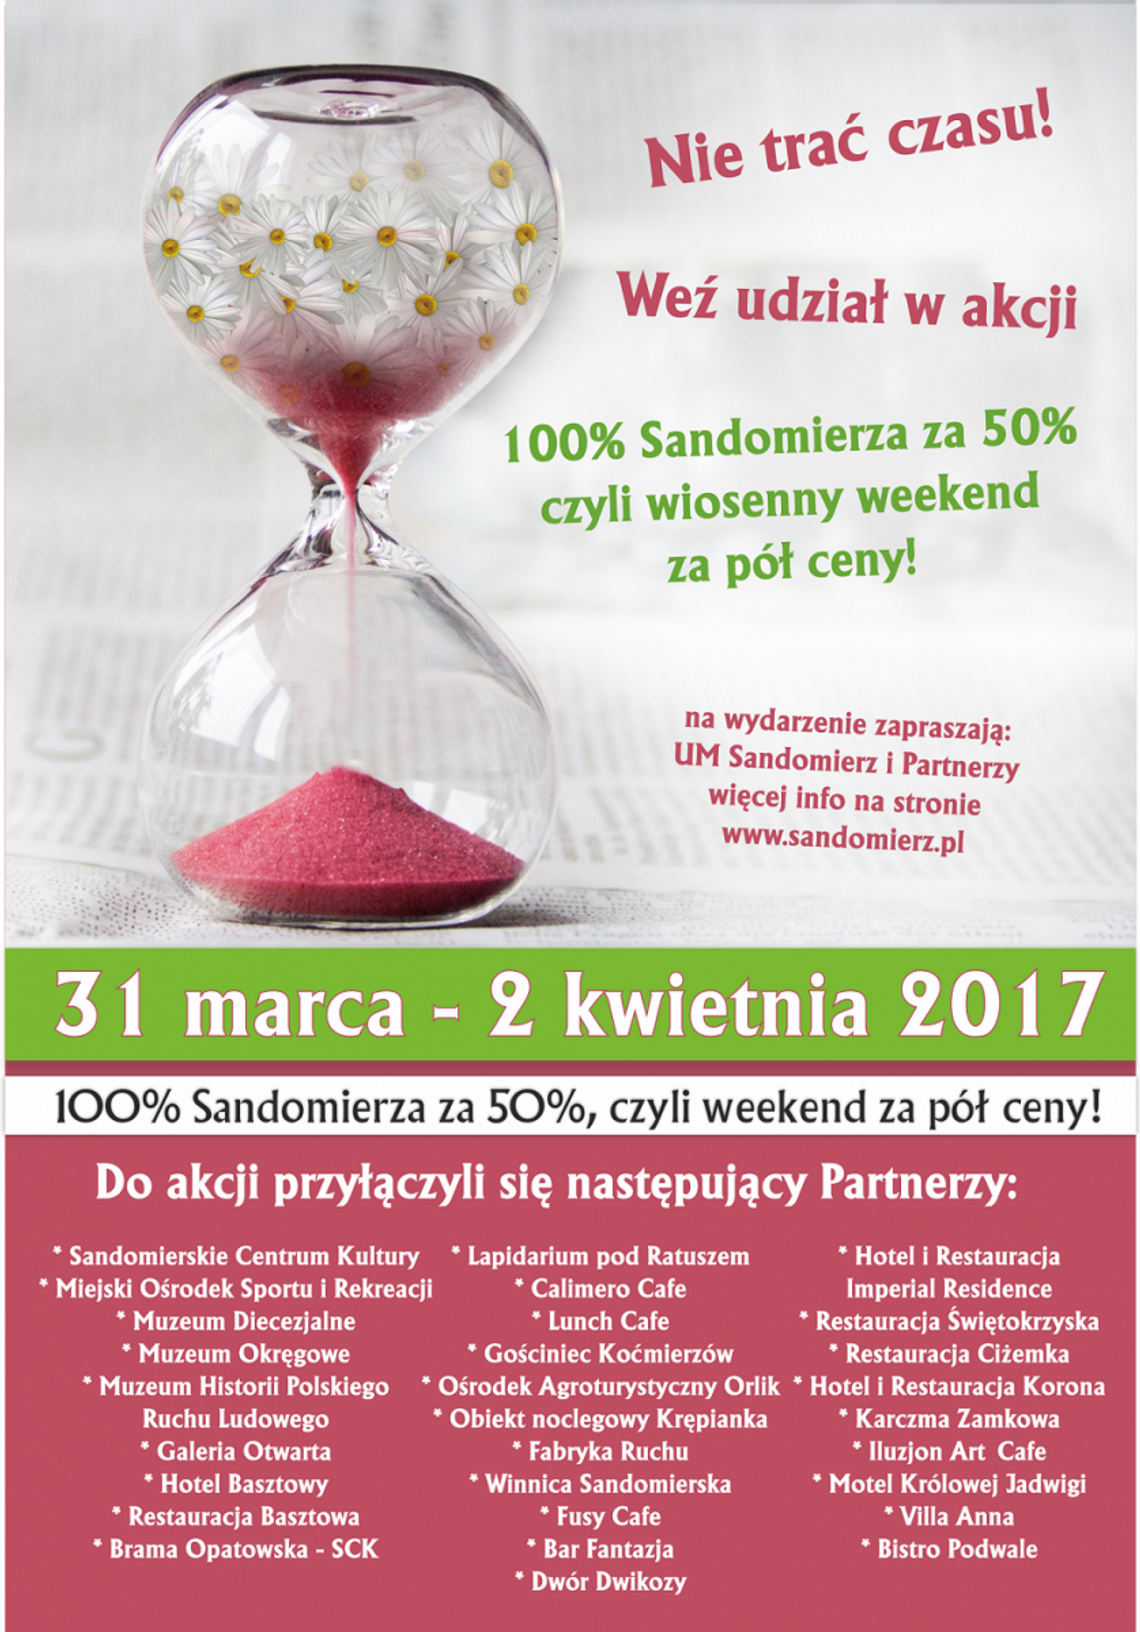 100% Sandomierza za 50%